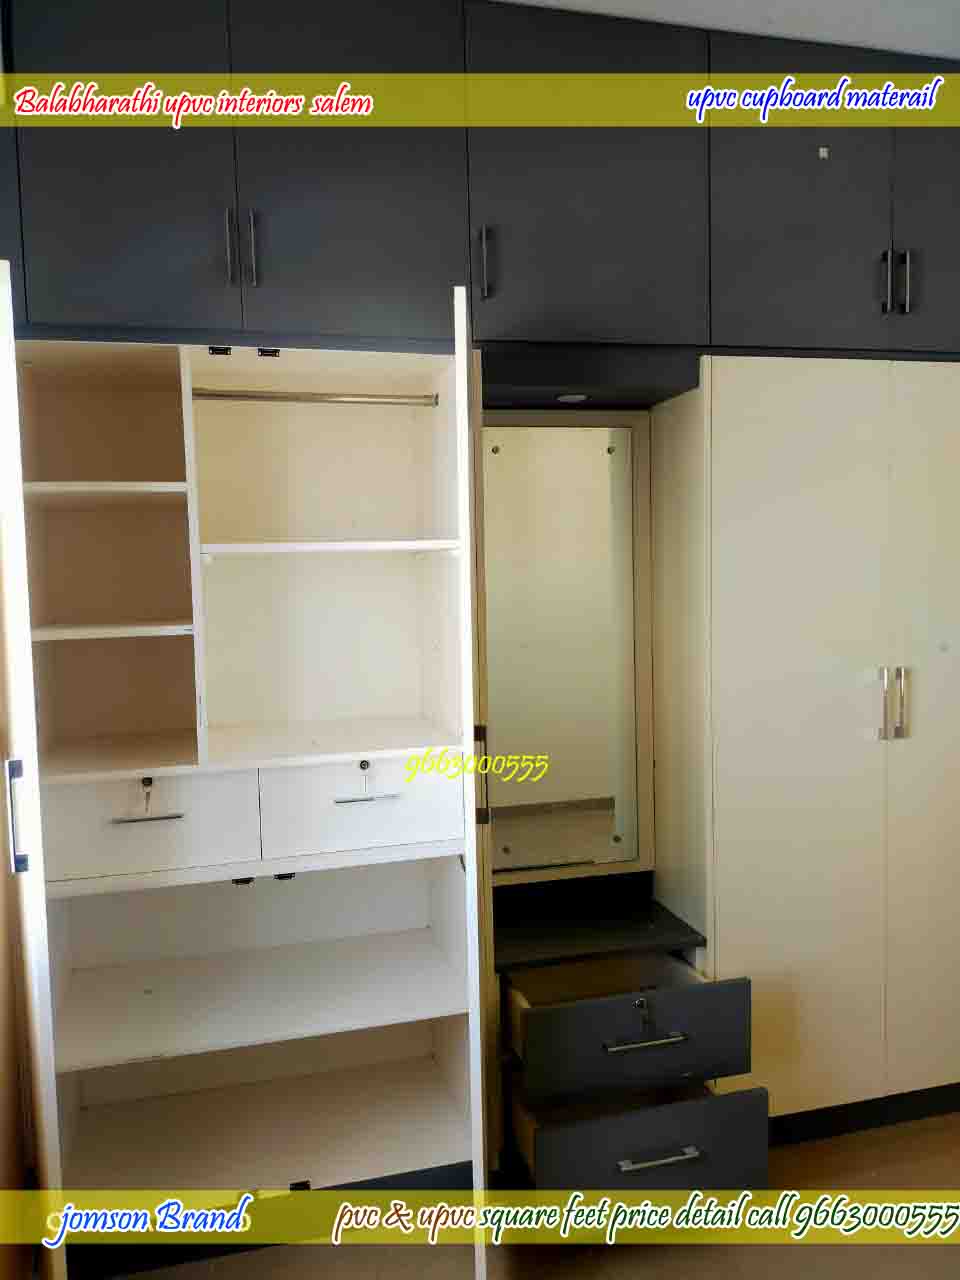 upvc kitchen cabinets ideas